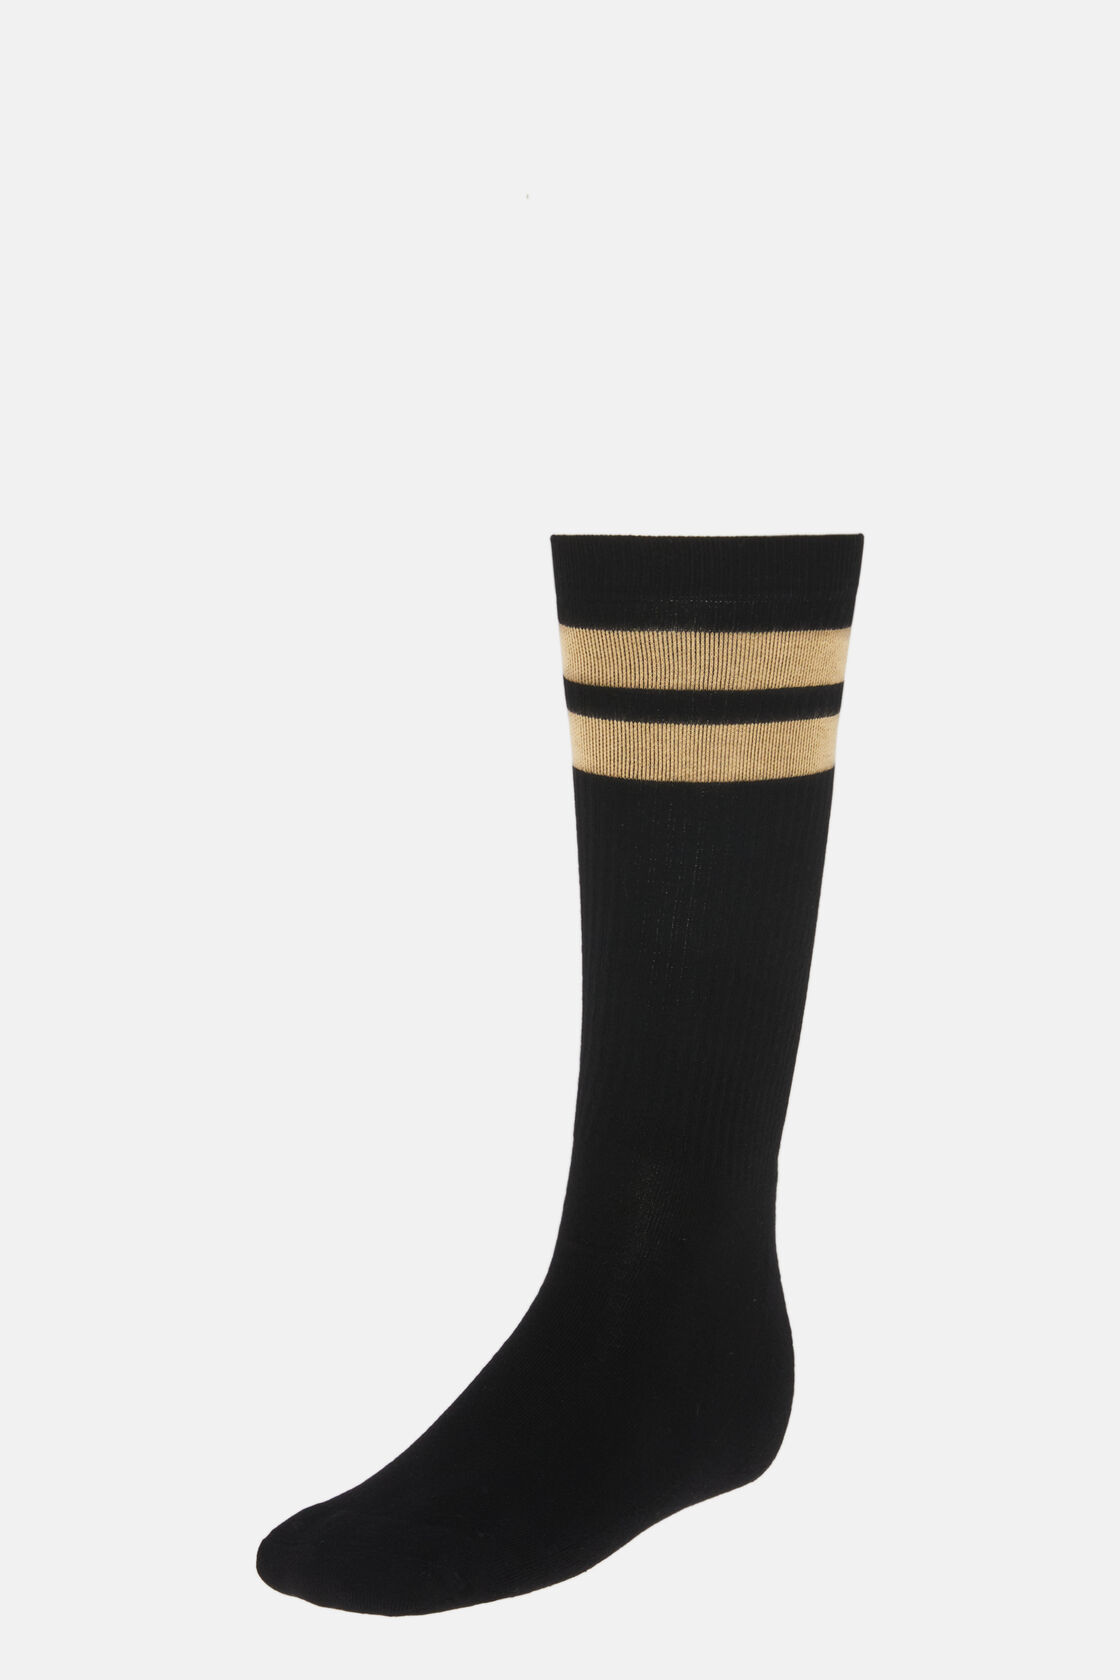 Κάλτσες με διπλή ρίγα, από σύμμεικτο βαμβάκι, Black, hi-res